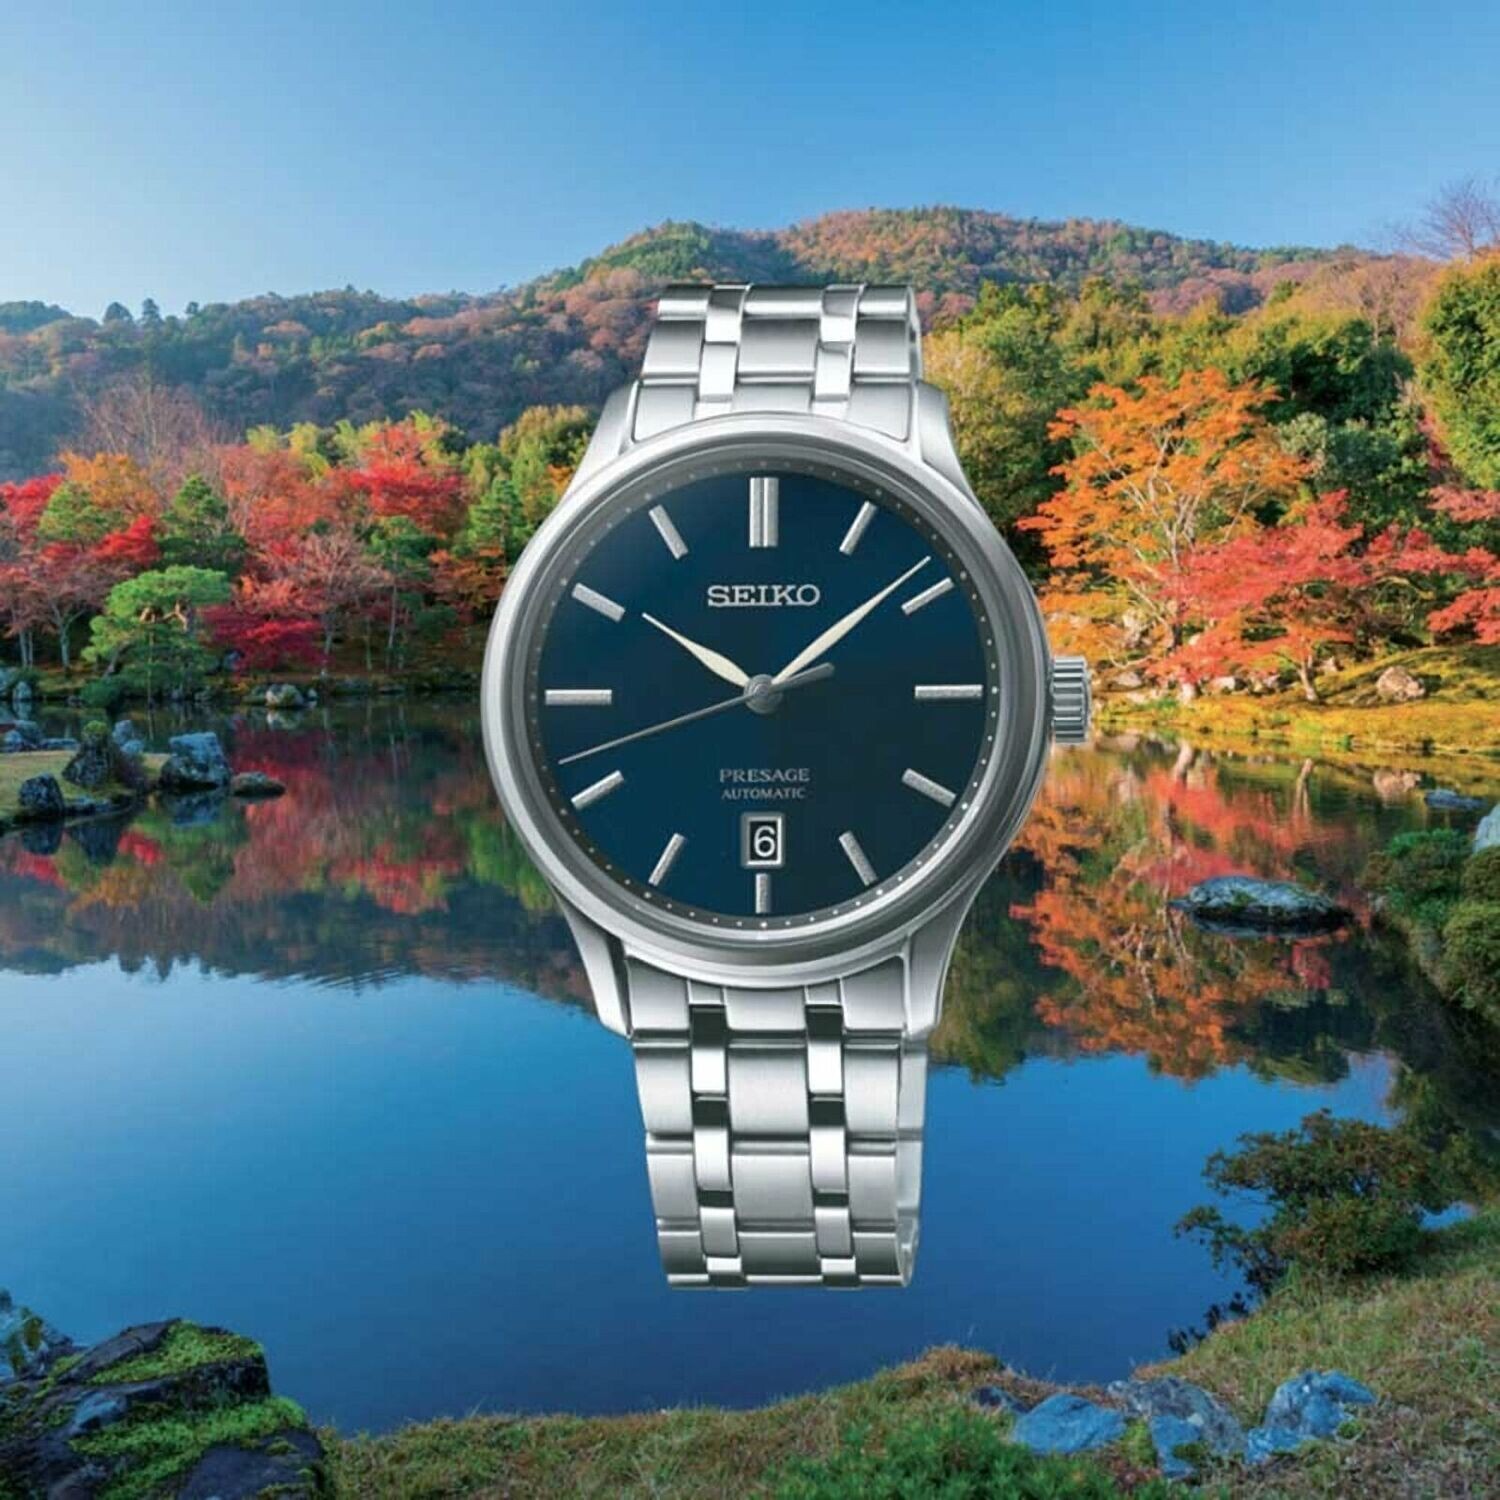 SEIKO Presage SRPD41J1 Zen Garden 41.7MM automatic men’s watch sapphire crystal stainless steel bracelet